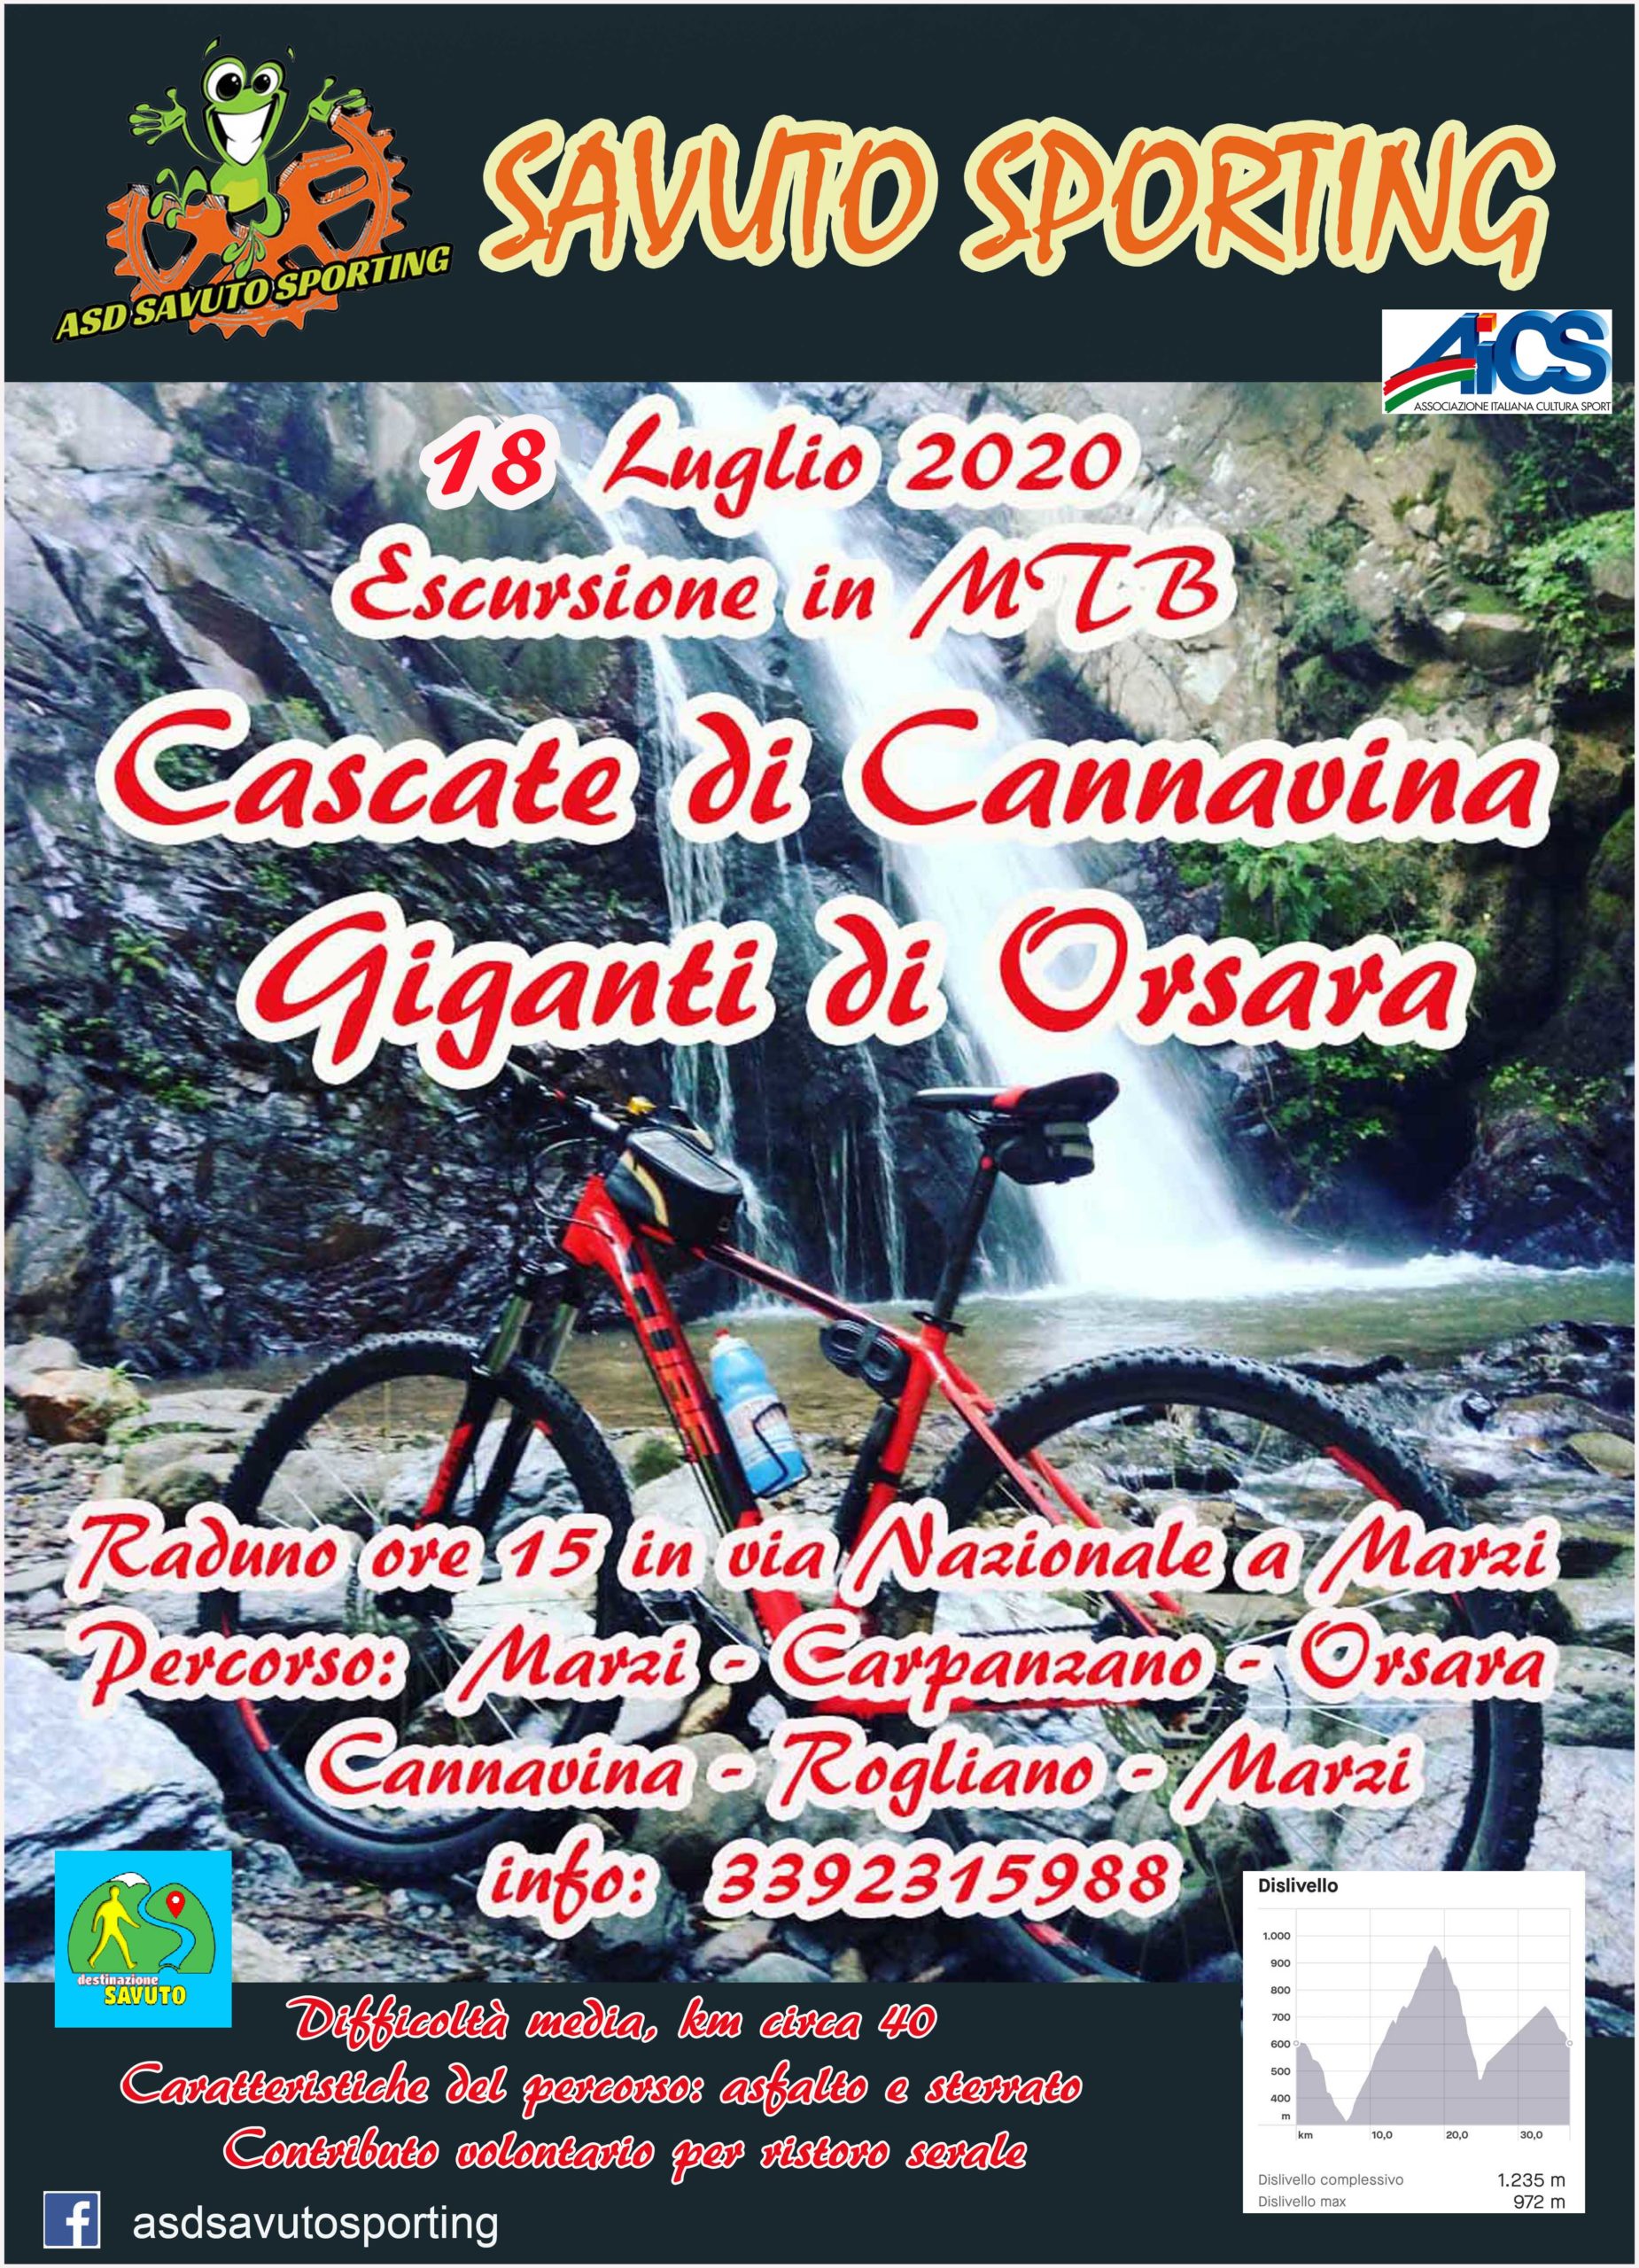 Itinerari mountain bike in Calabria. I GIGANTI DI ORSARA E LE CASCATE DI CANNAVINA